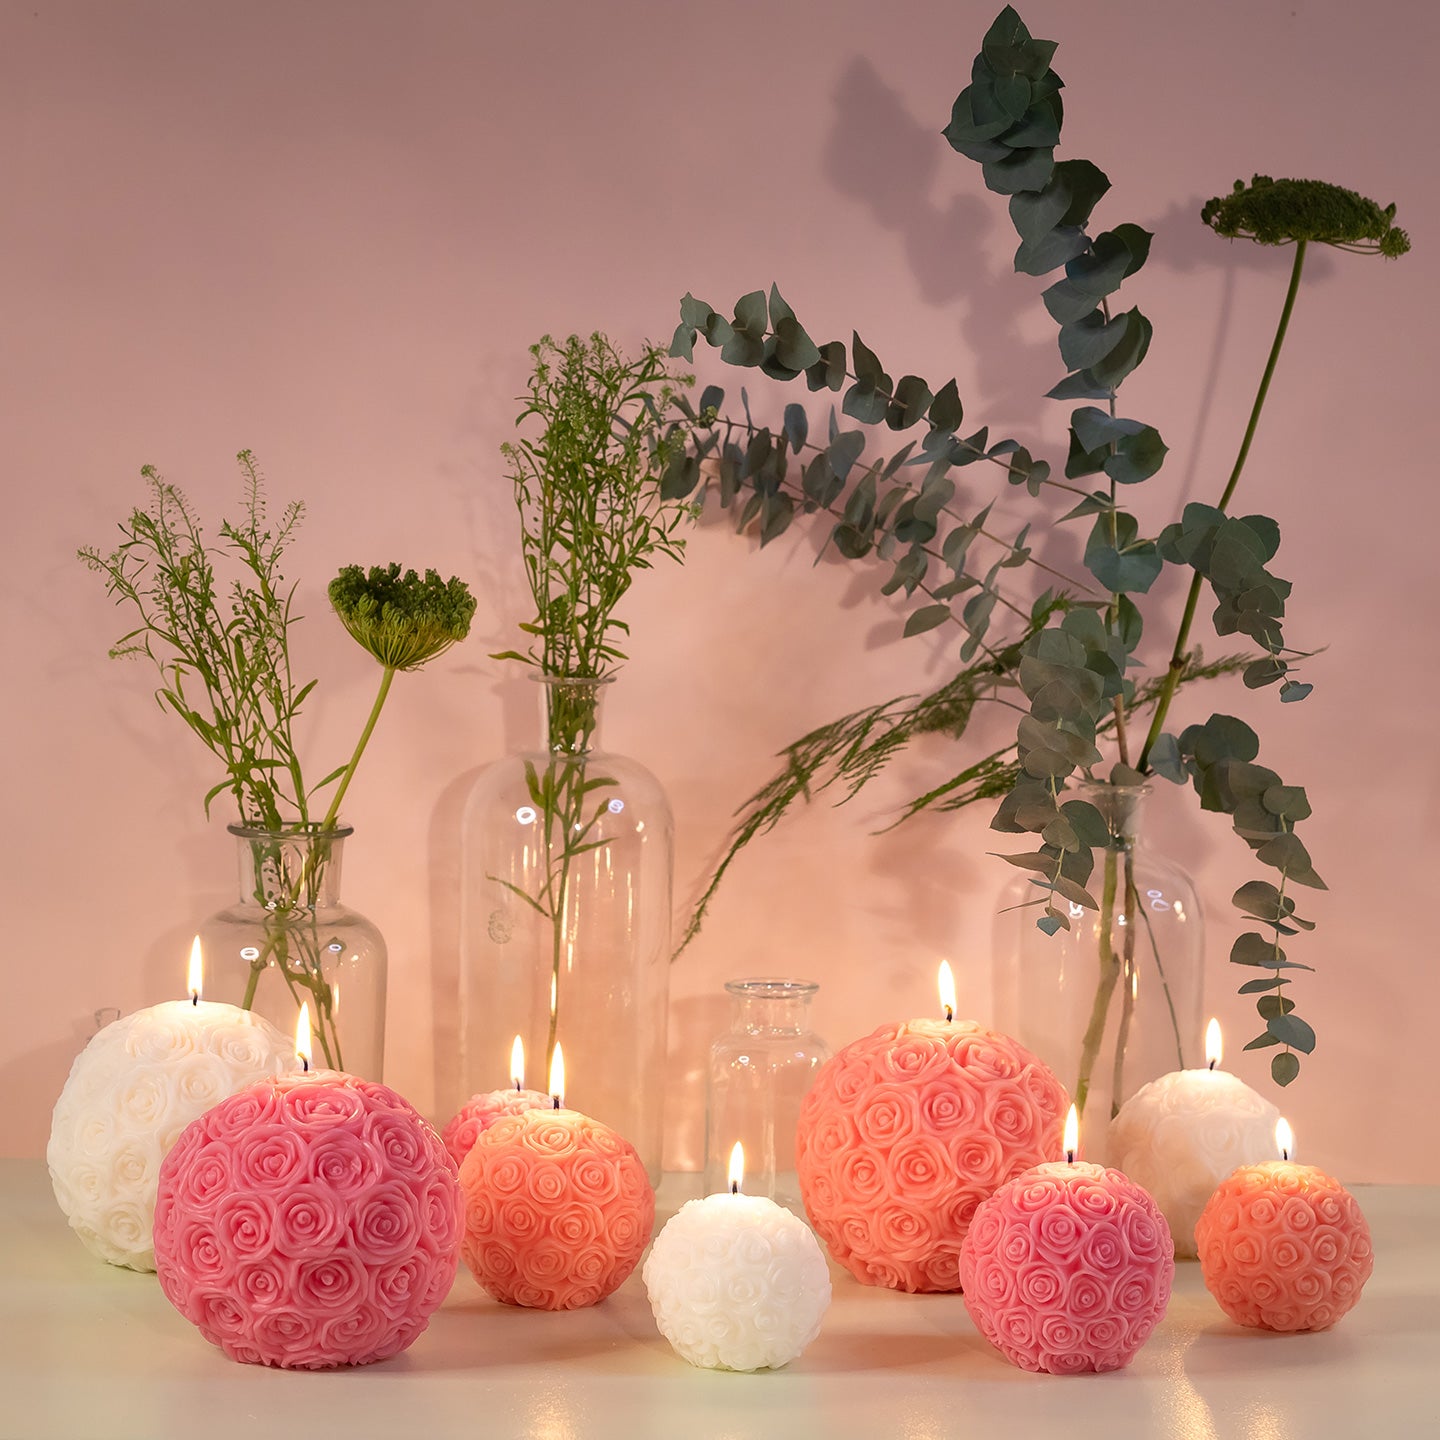 Bougies en forme de boules de roses allumées avec un décor de bocaux et de plantes